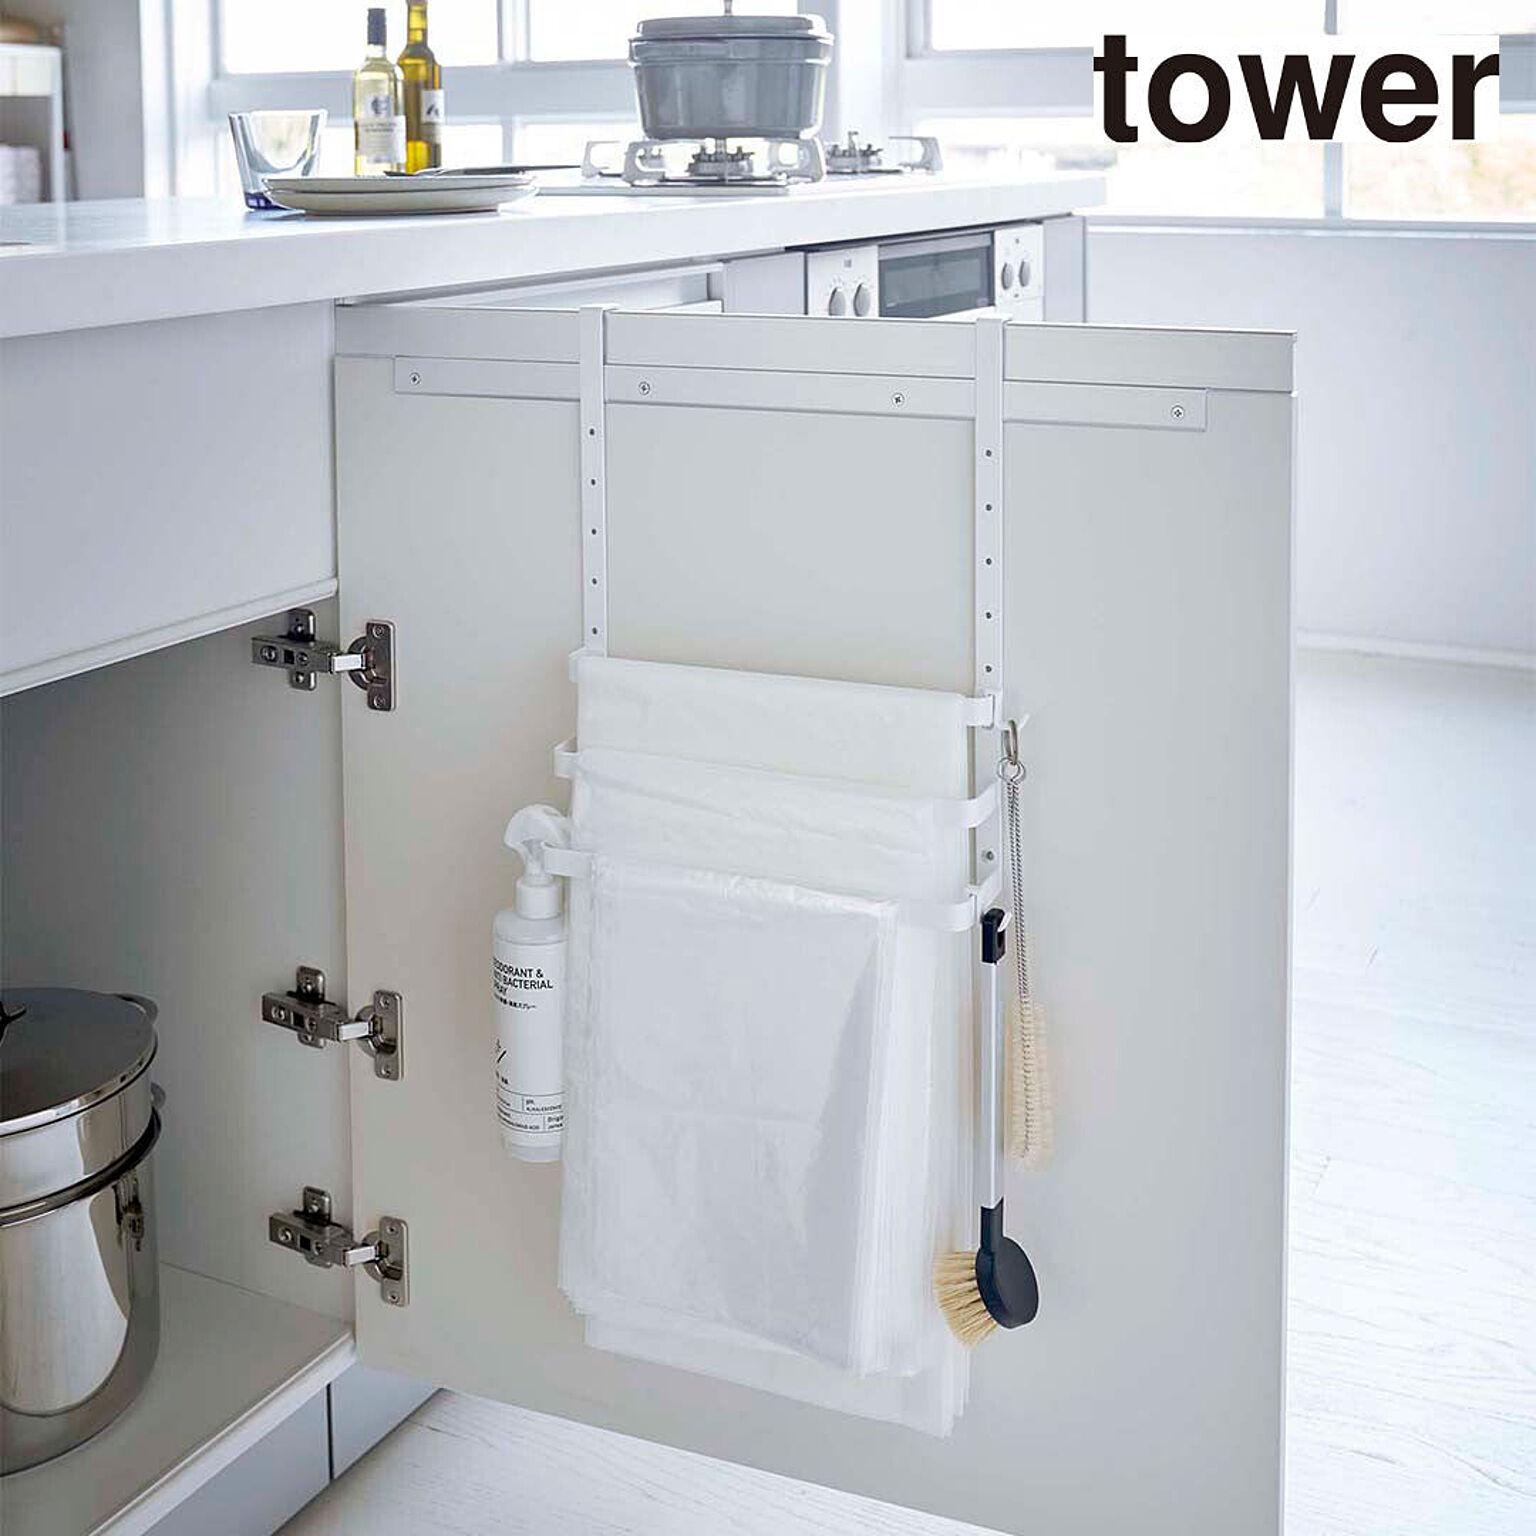 【タワー】シンク扉ゴミ袋ホルダー  タオルハンガー付き  タワー  ホワイト